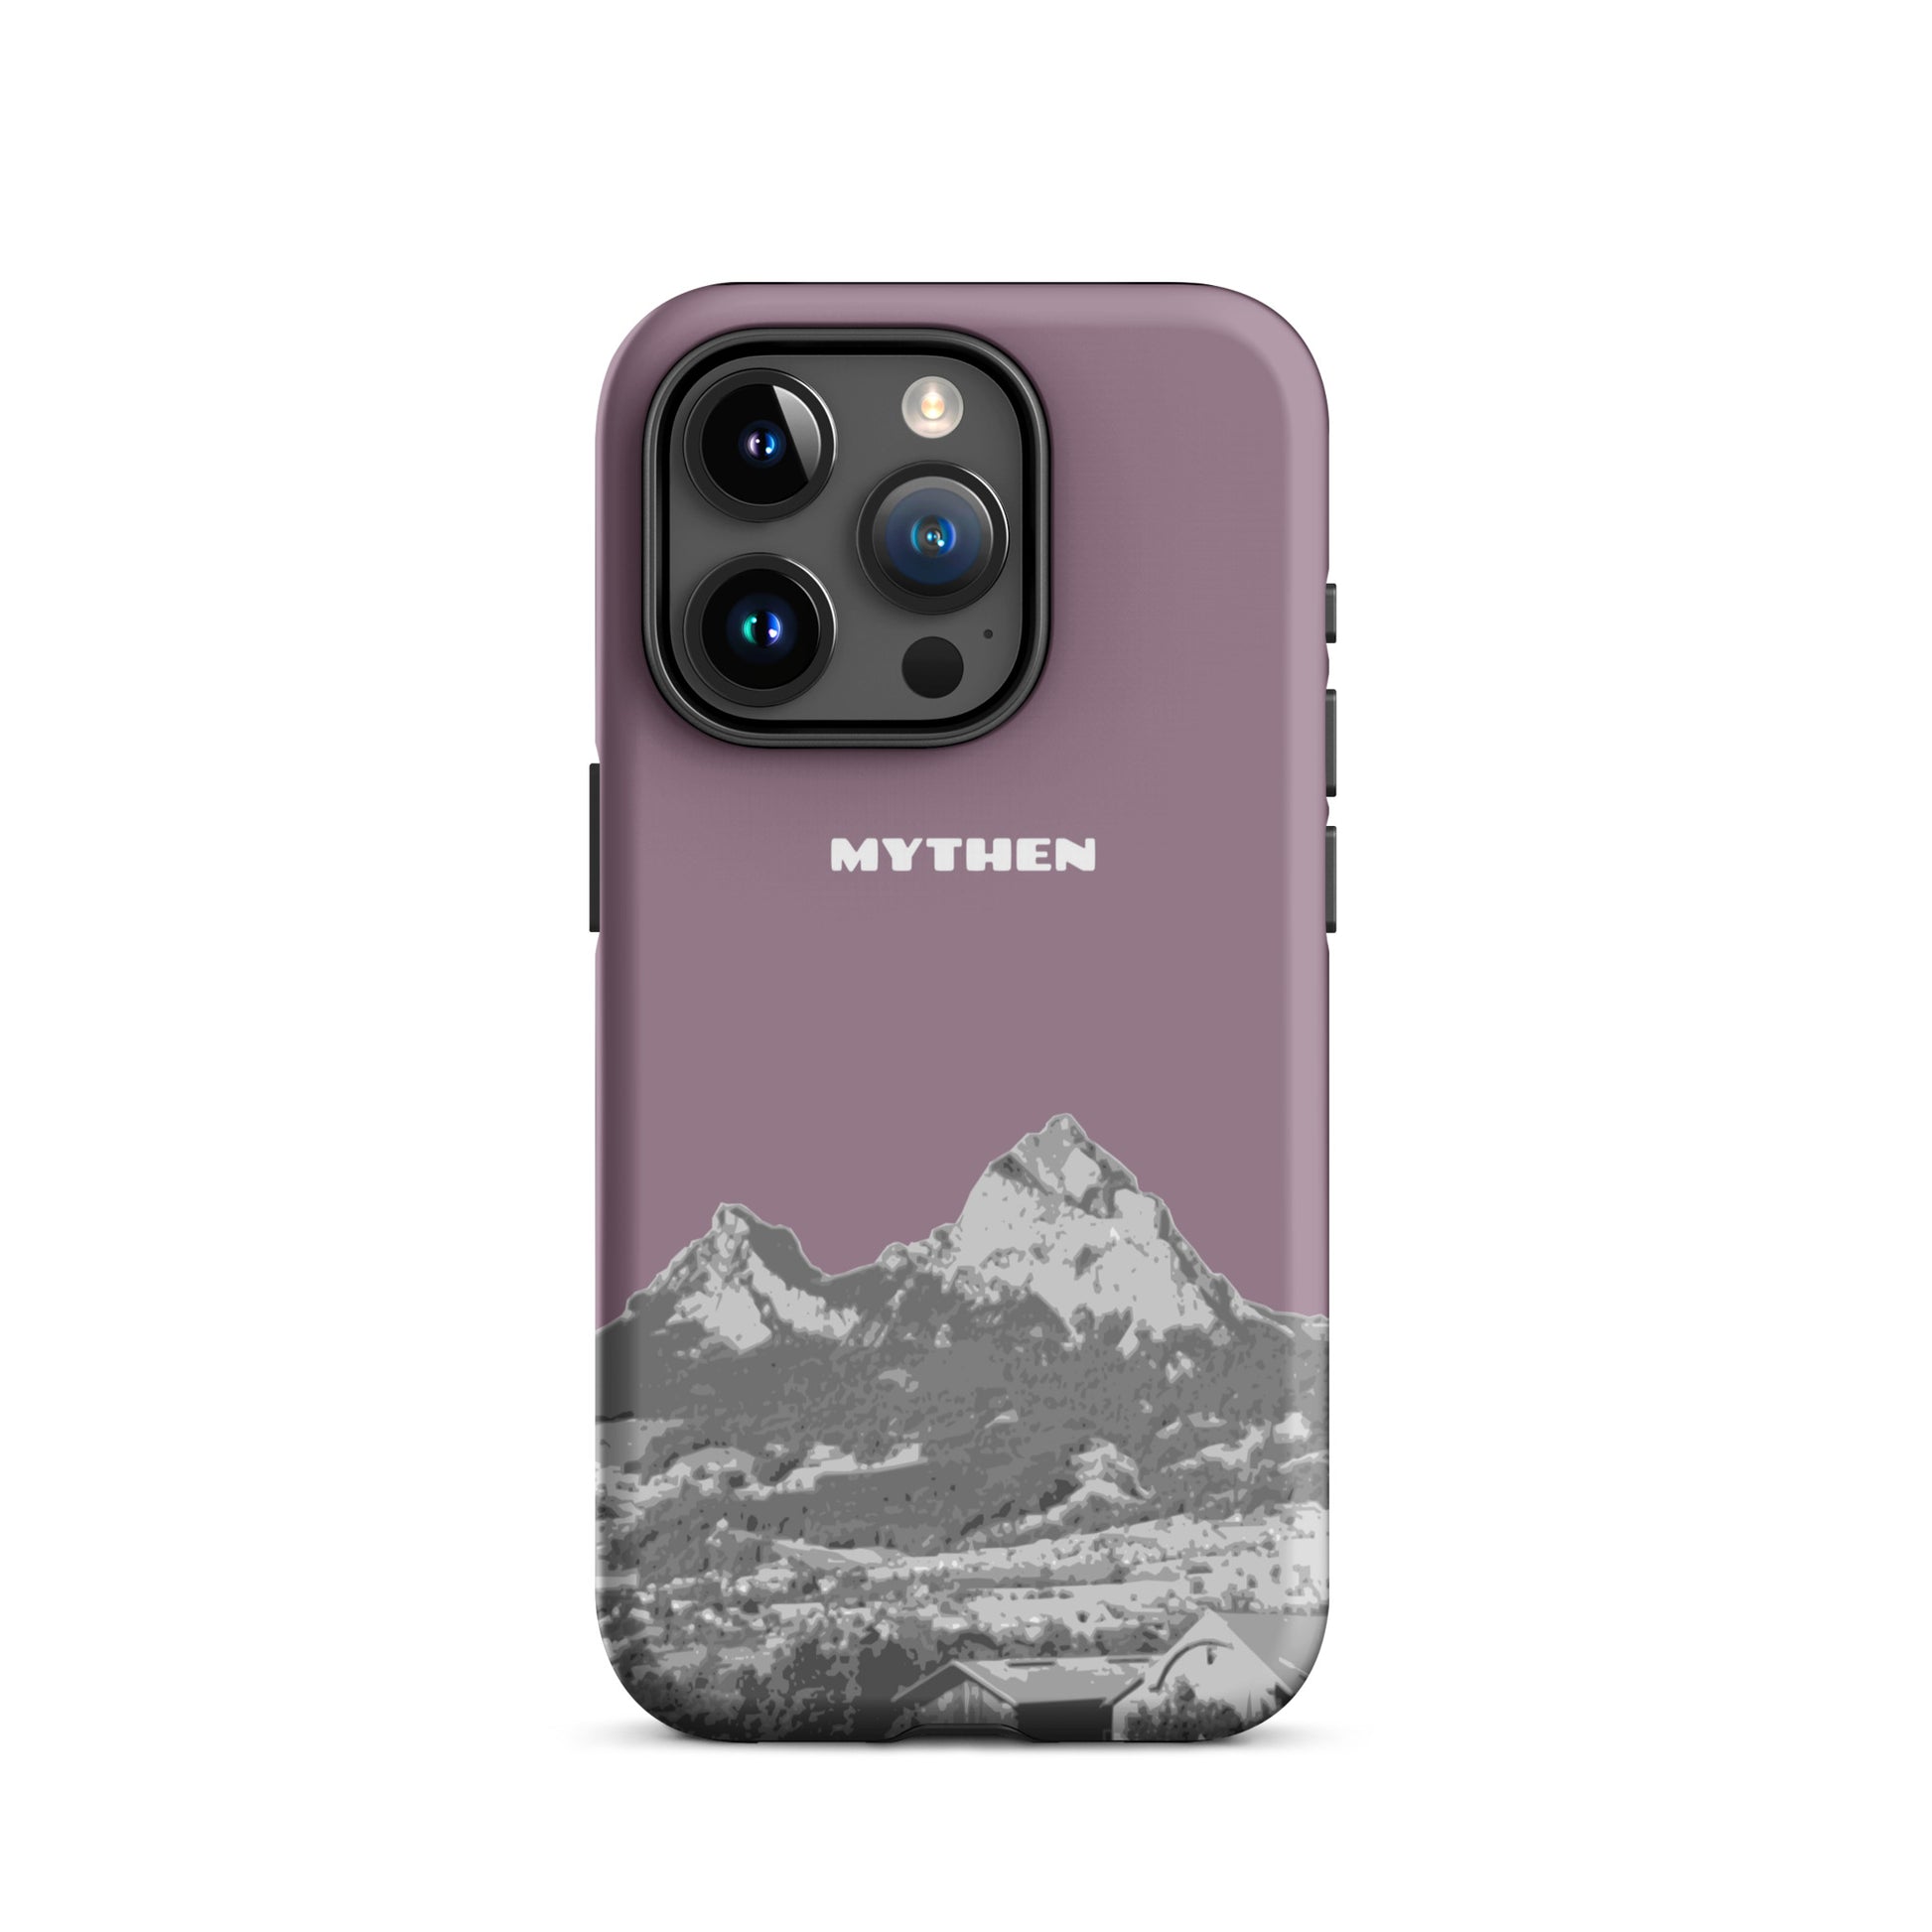 Hülle für das iPhone 15 Pro von Apple in der Farbe Pastellviolett, die den Grossen Mythen und den Kleinen Mythen bei Schwyz zeigt. 